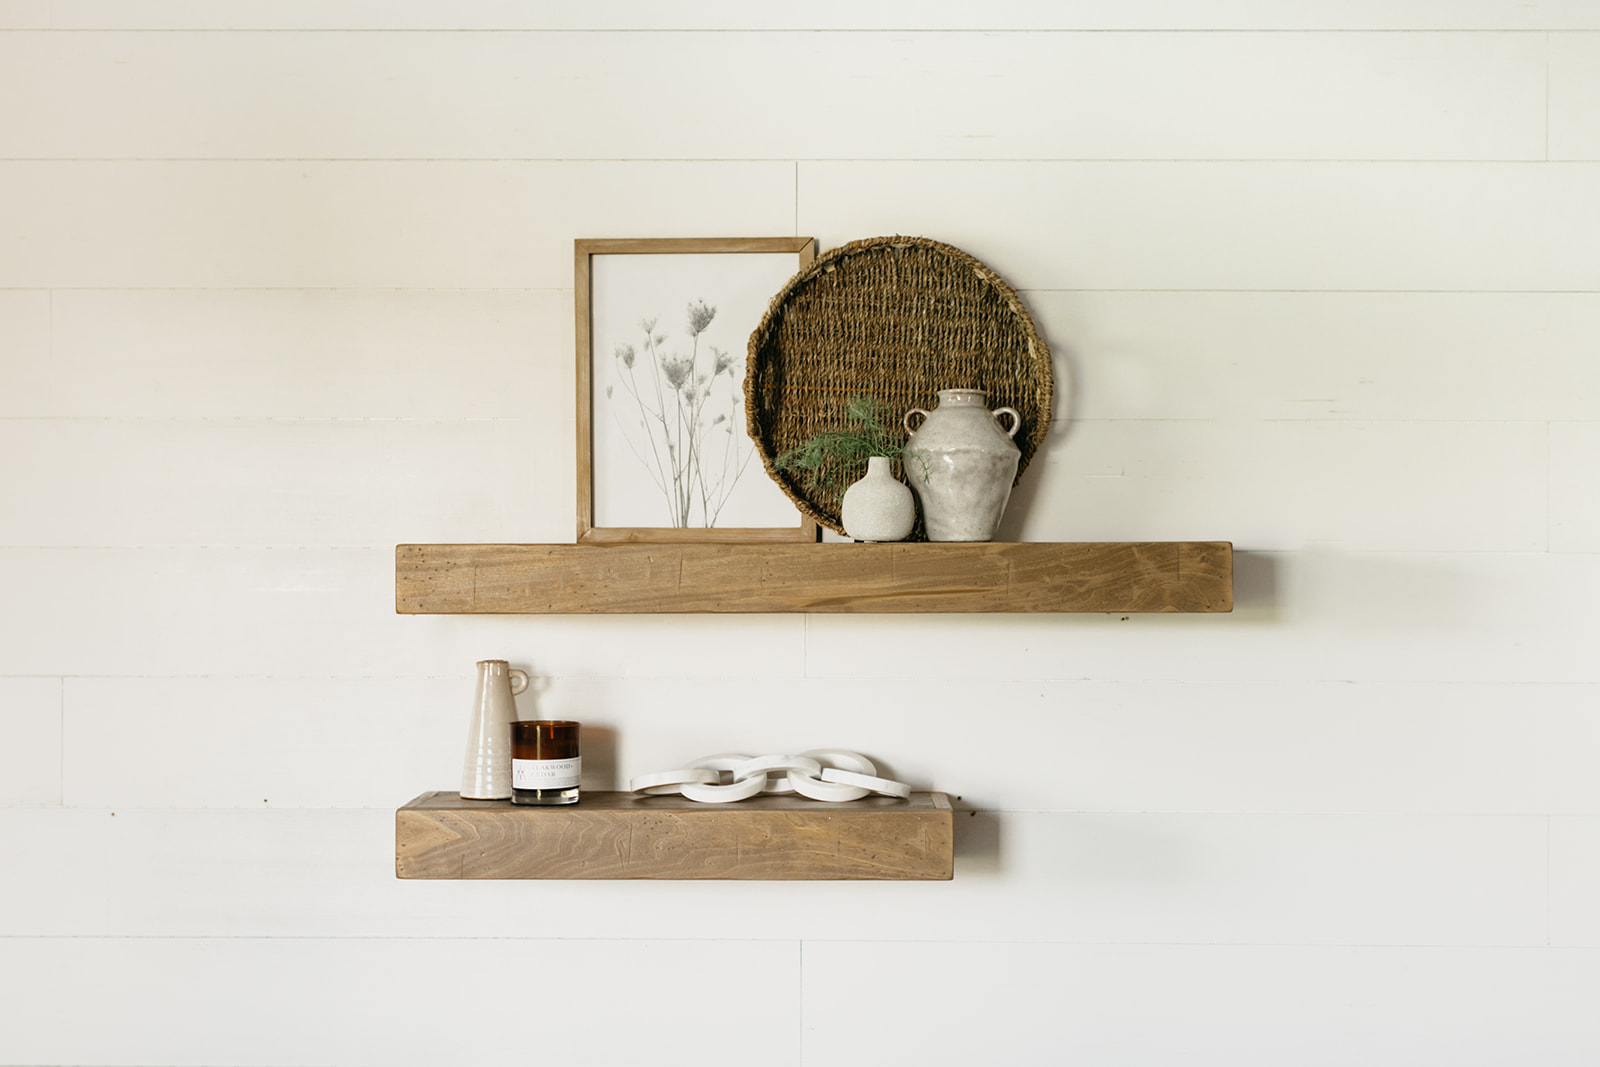 Wood Wall Shelves